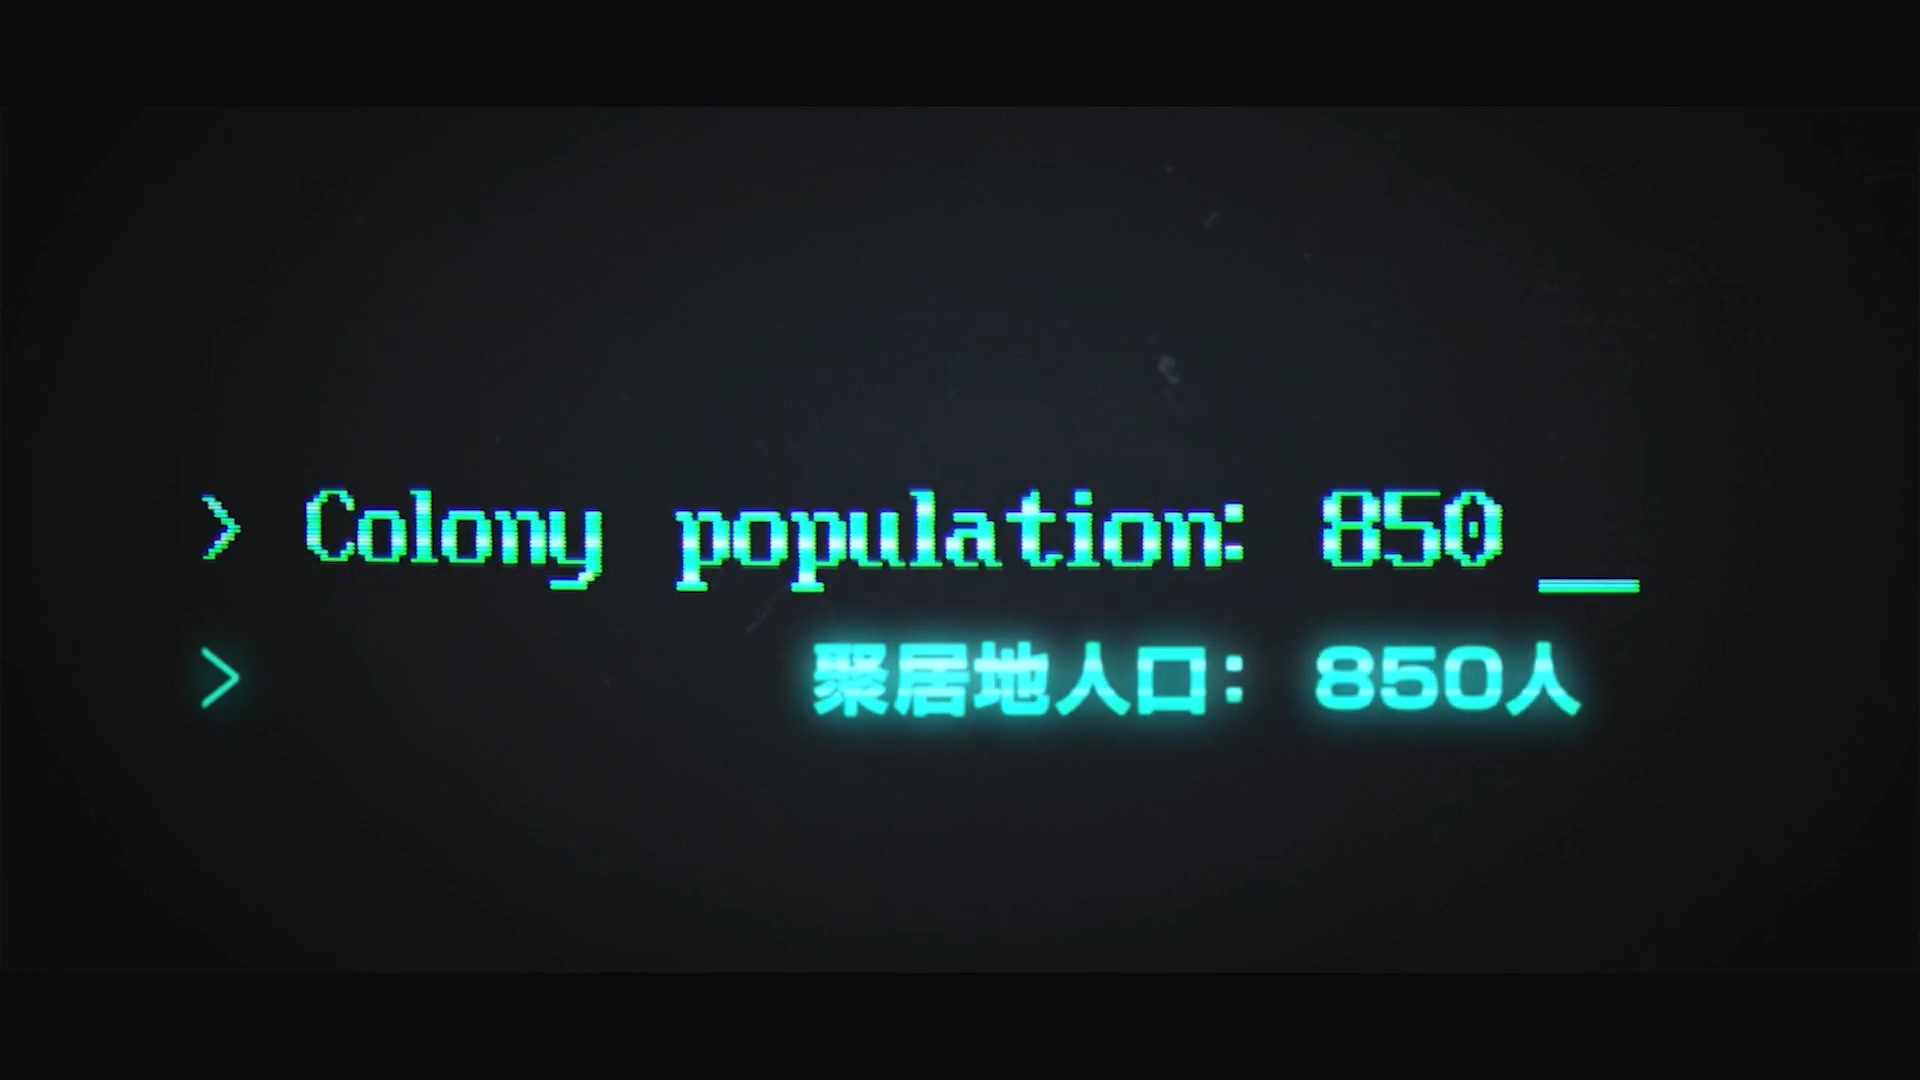 《億萬僵屍》PS4中文版將於8月20日發售 新預告發布